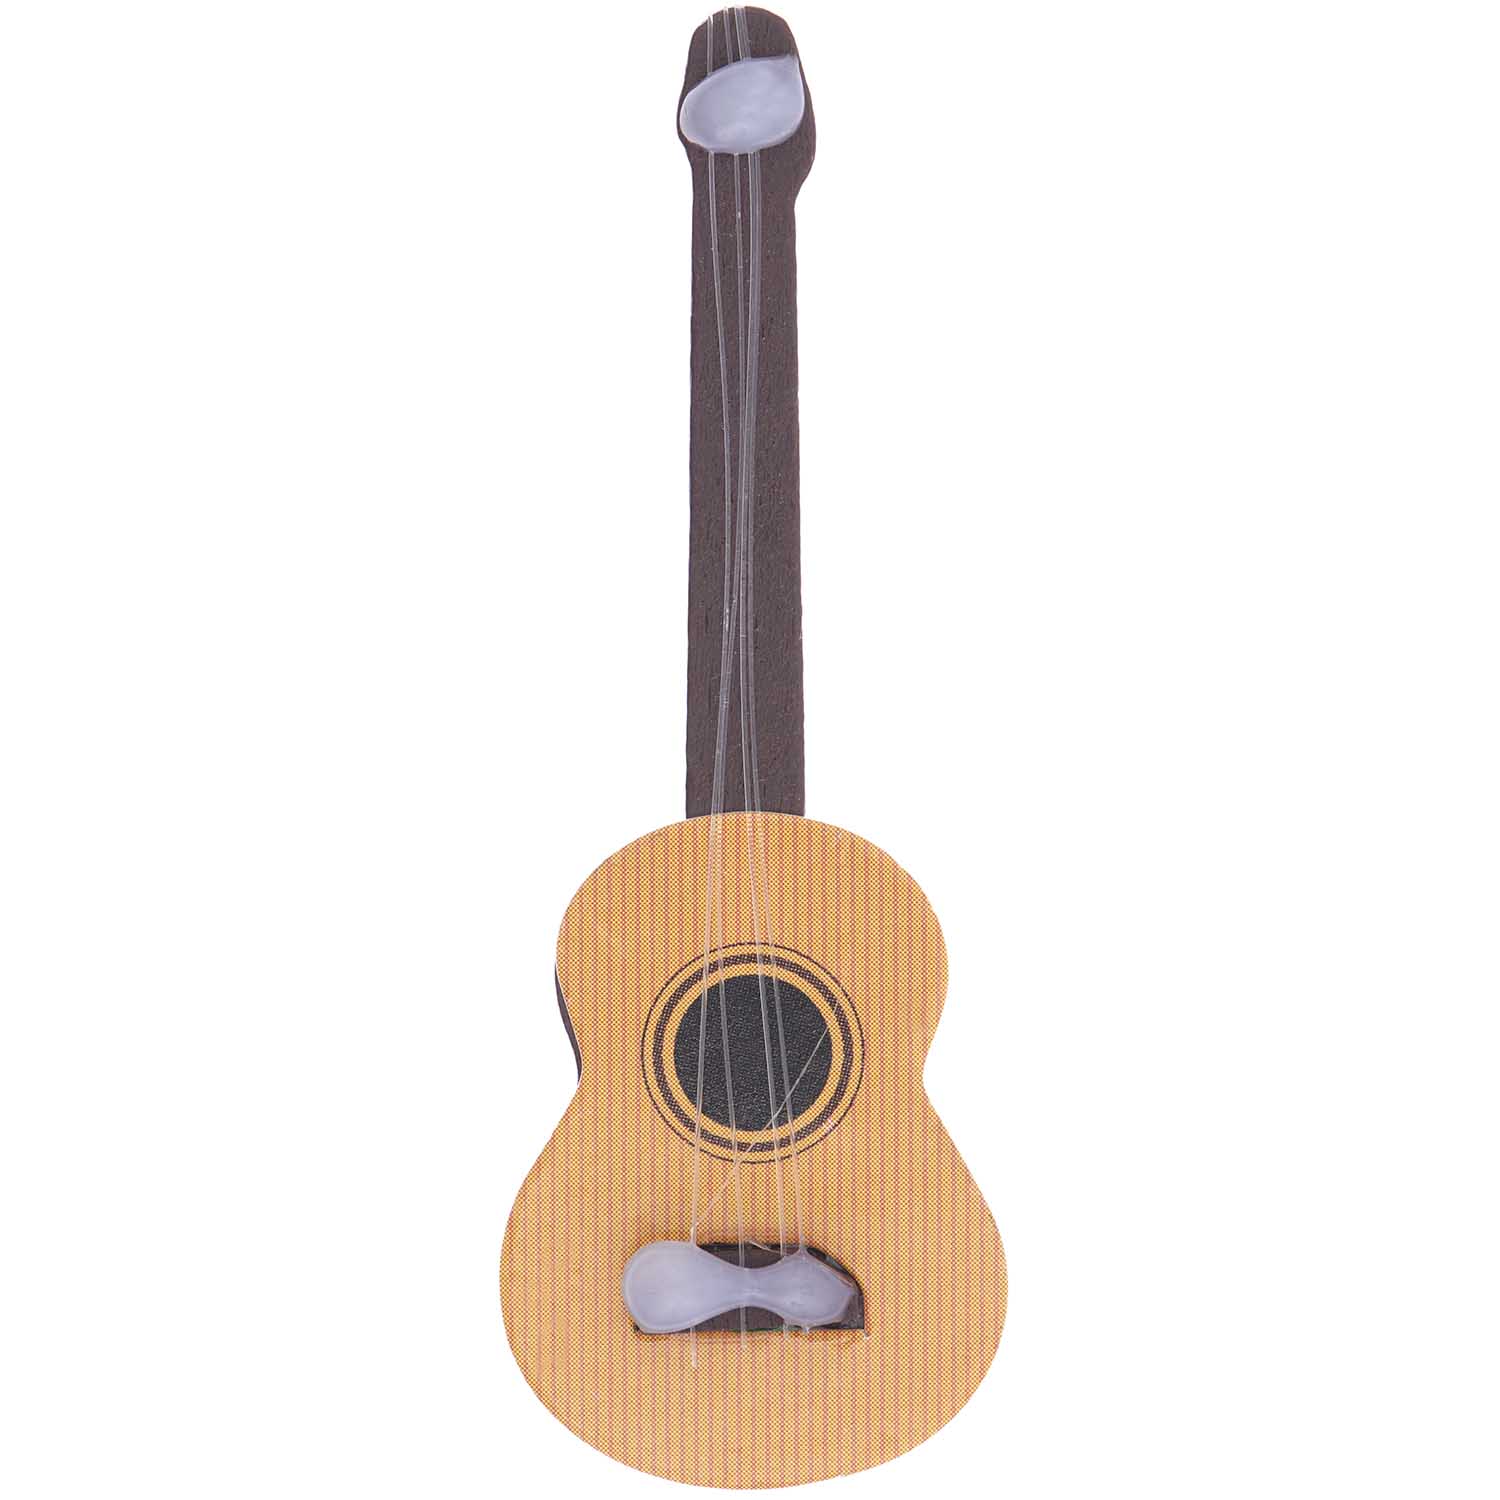 Miniatur Gitarre 2,5x6,5x1cm